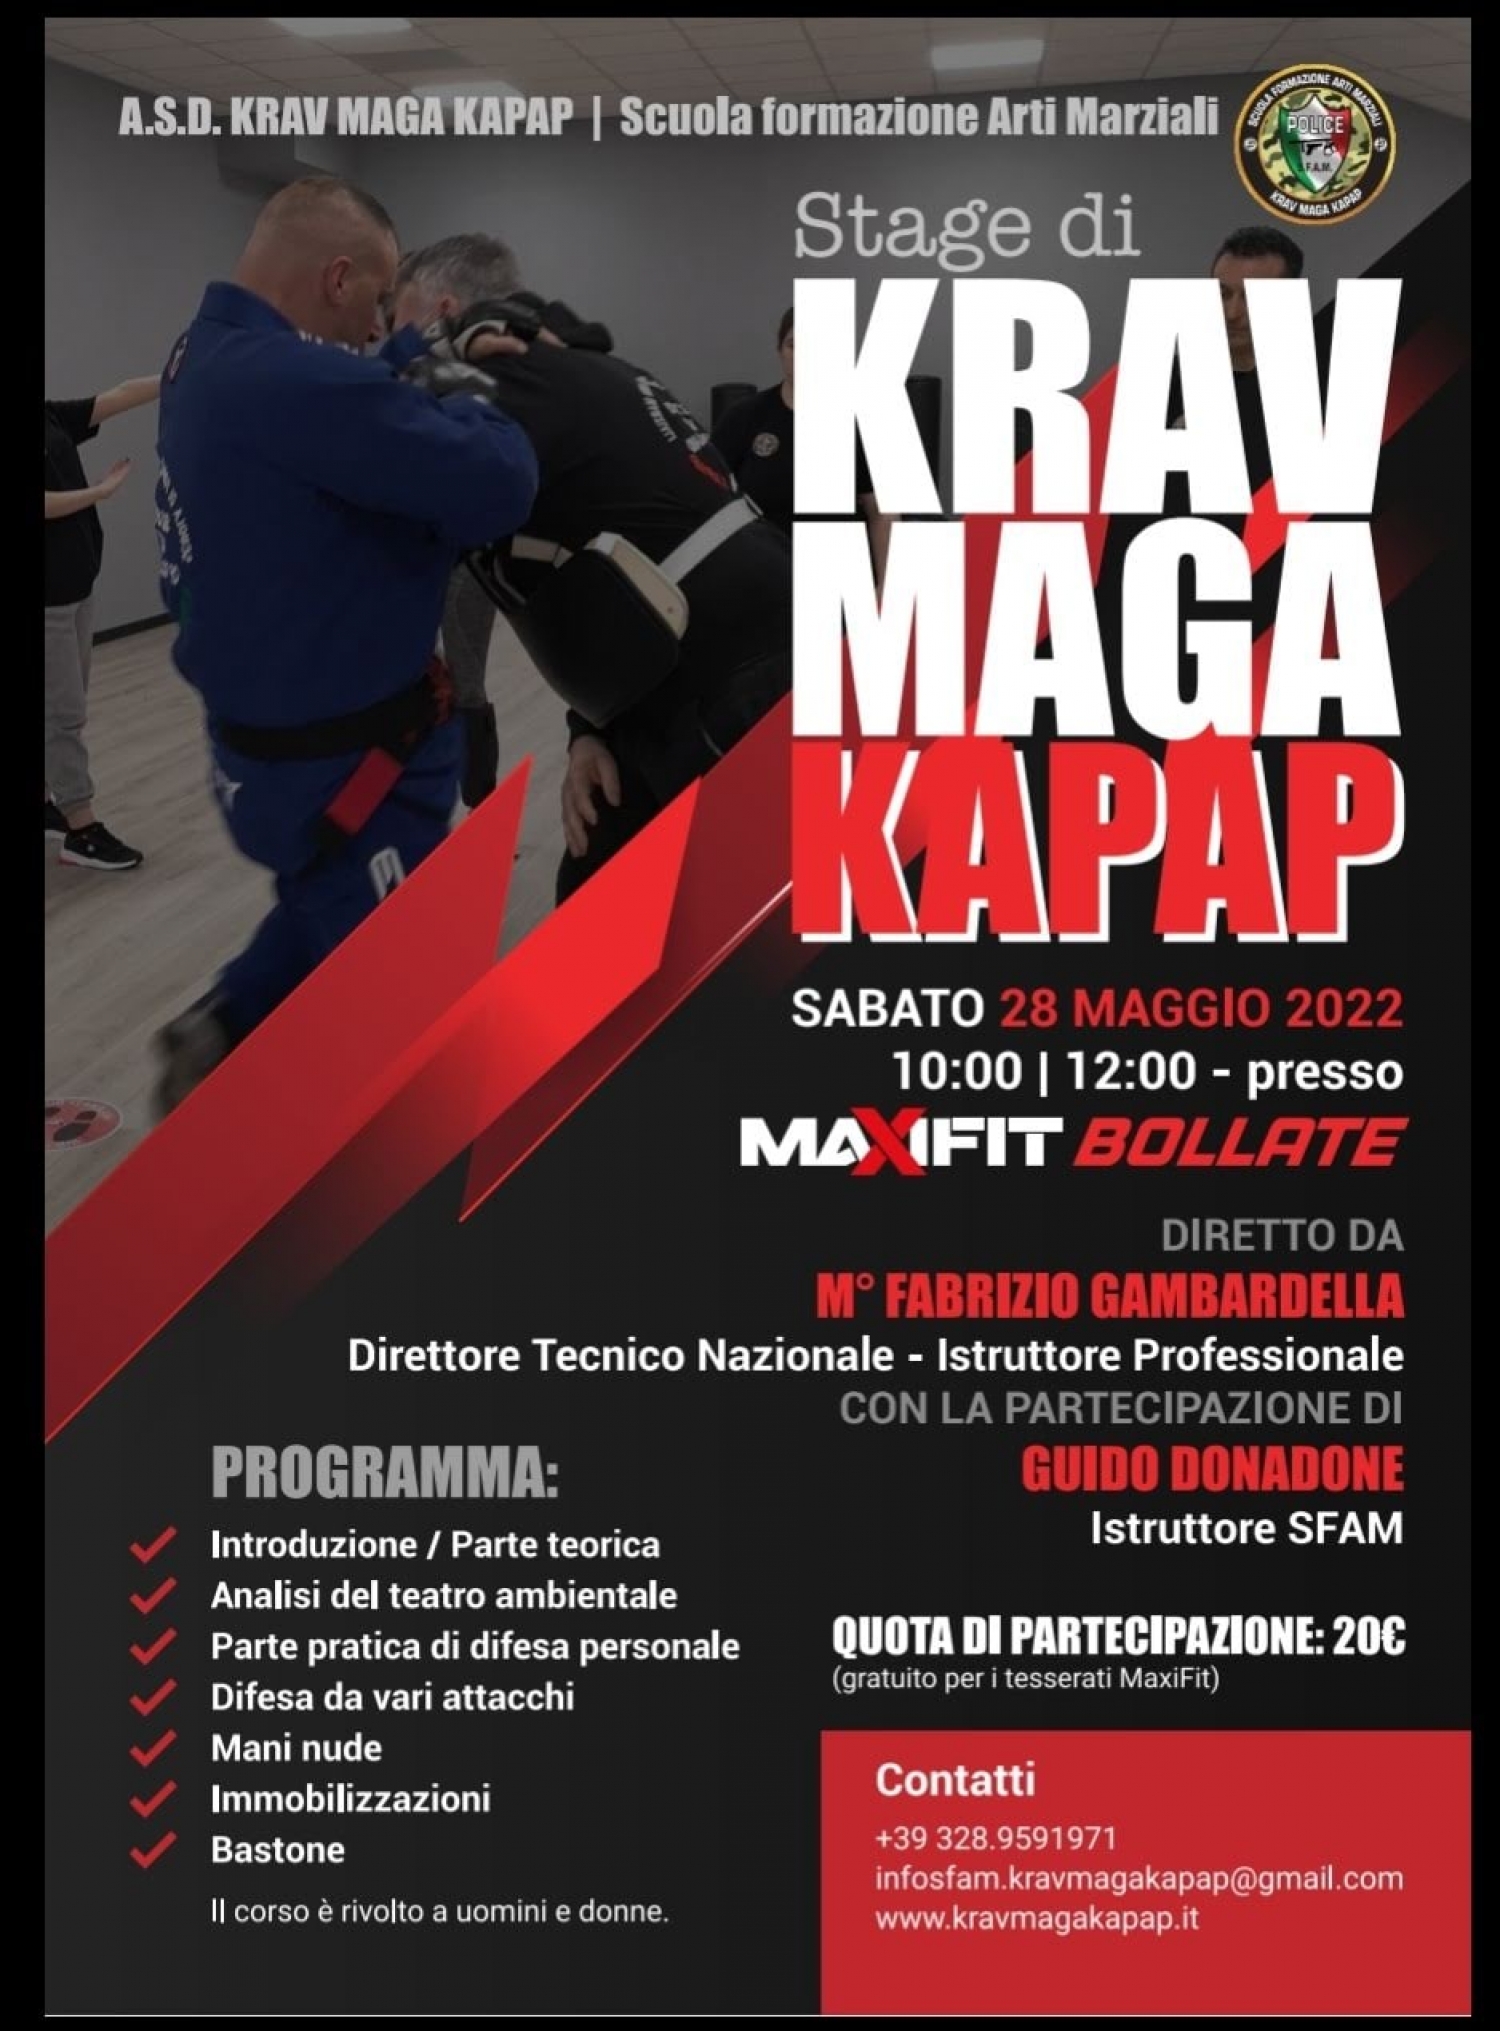 Stage di KRAV MAGA KAPAP diretto dal M° Fabrizio Gambardella con la partecipazione di Guido Donadone Istruttore SFAM